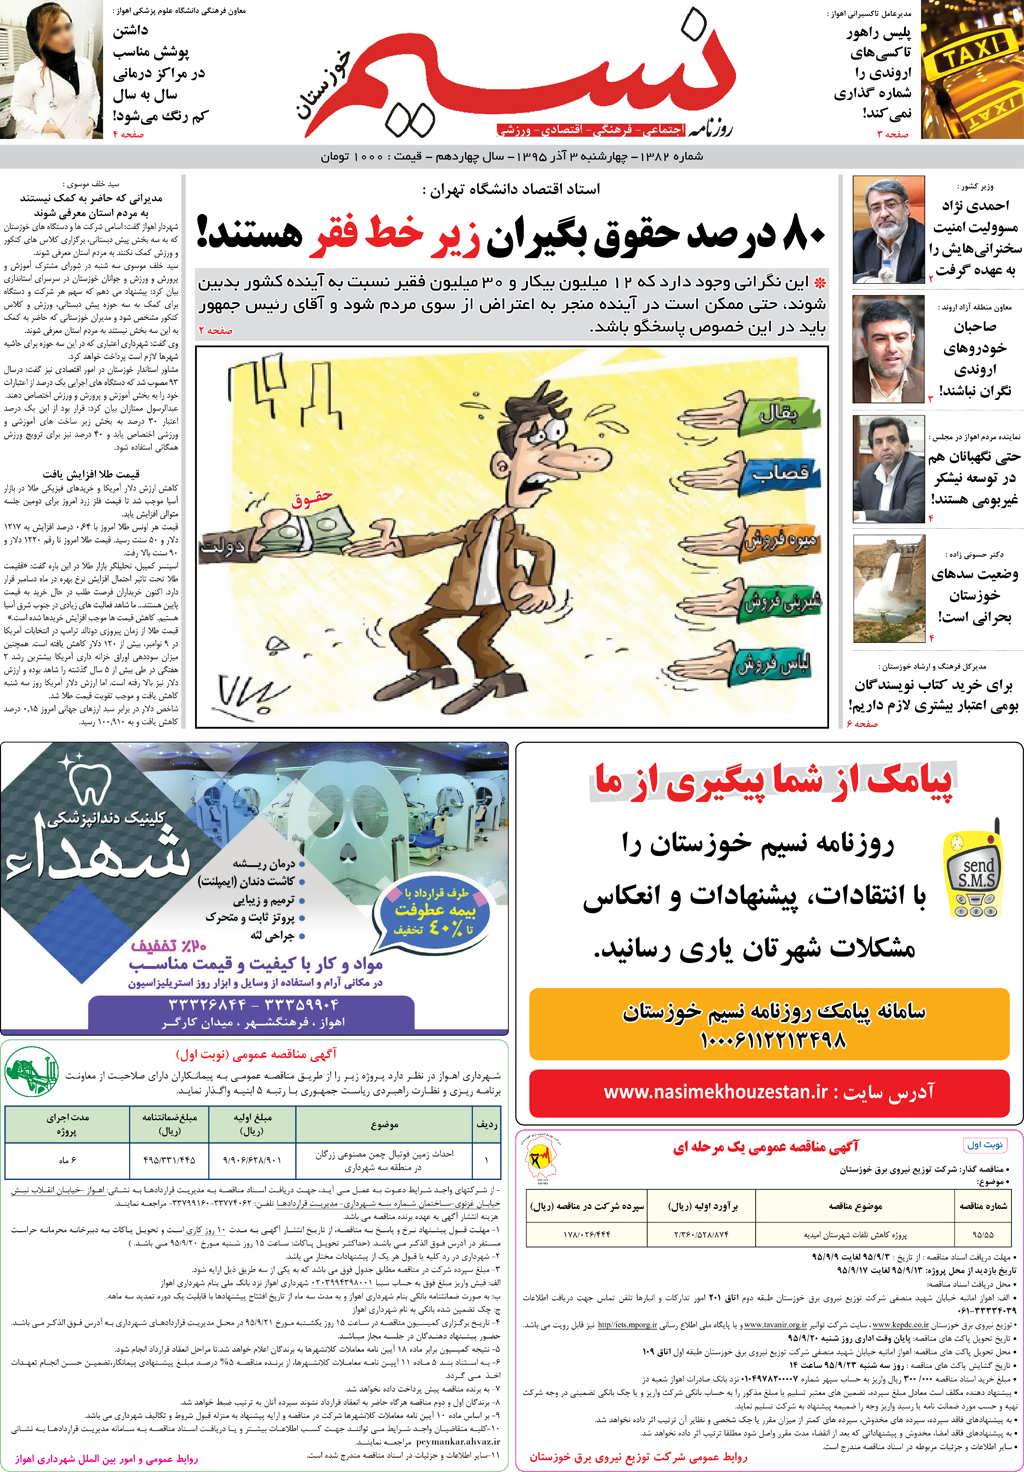 صفحه اصلی روزنامه نسیم شماره 1382